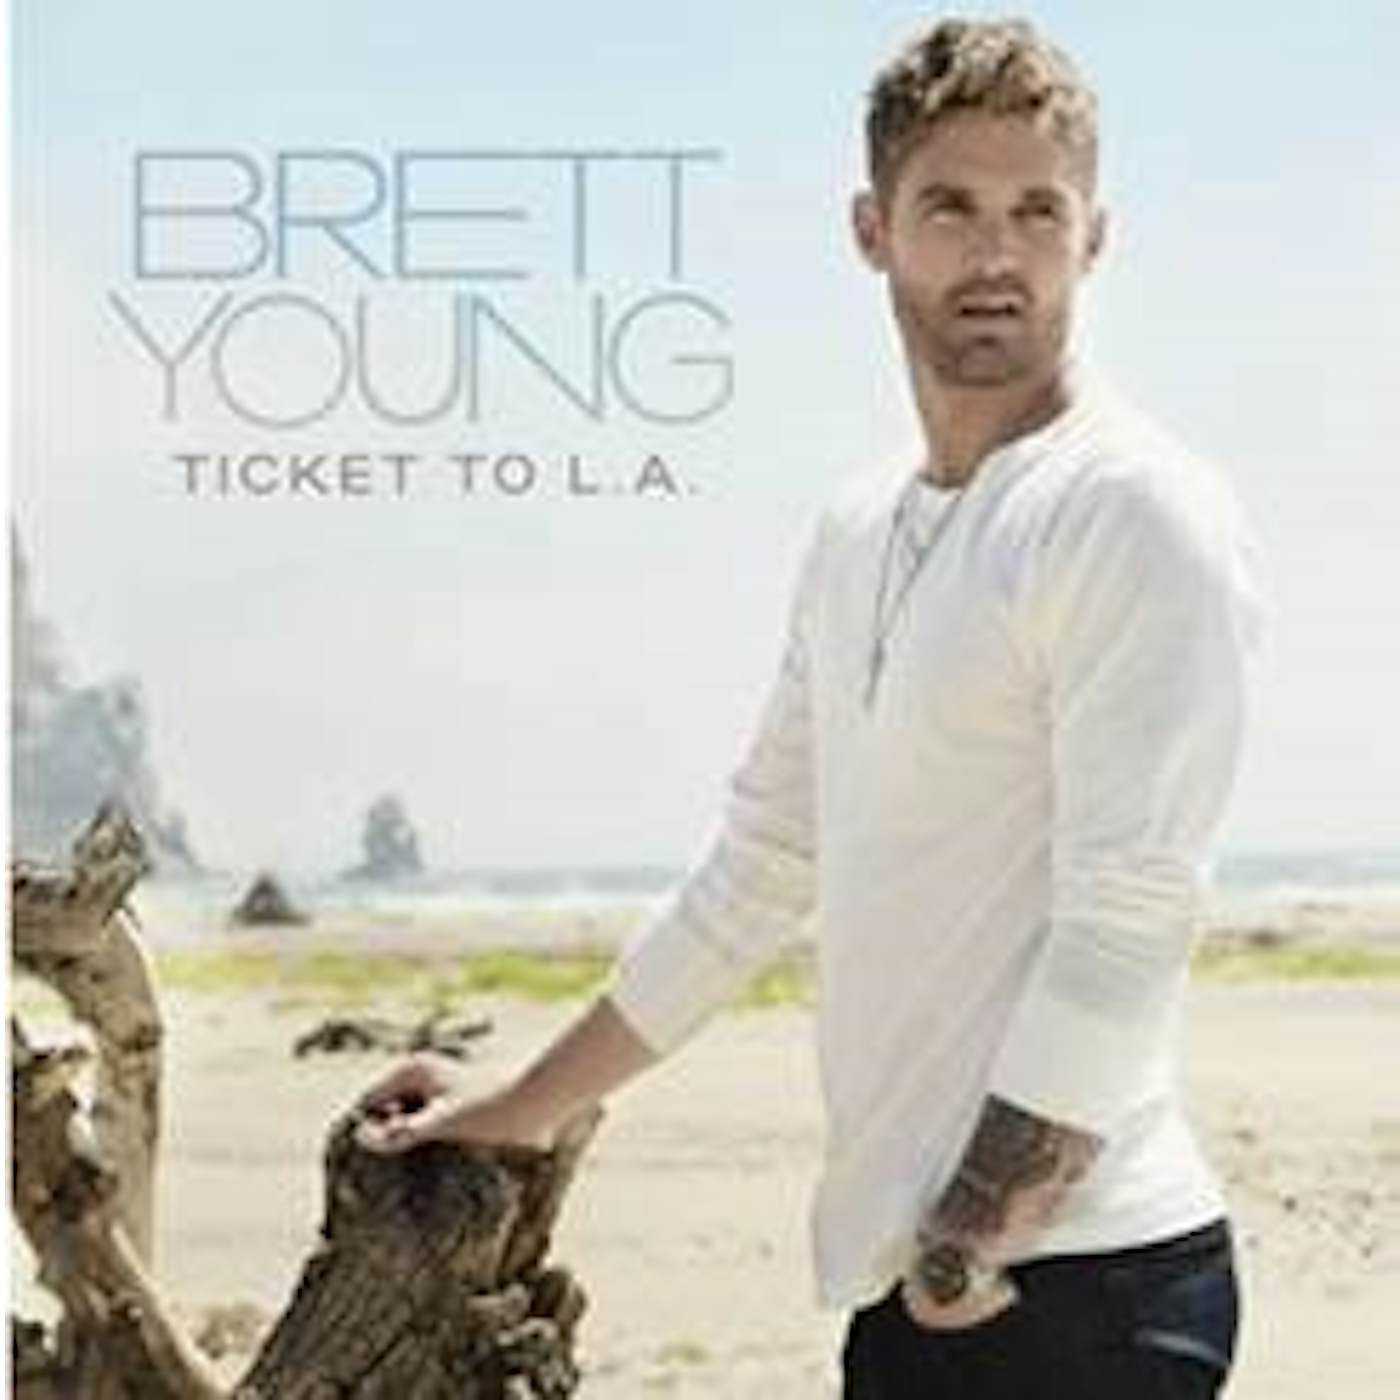 Brett Young Ticket To L.A. Vinyl Record